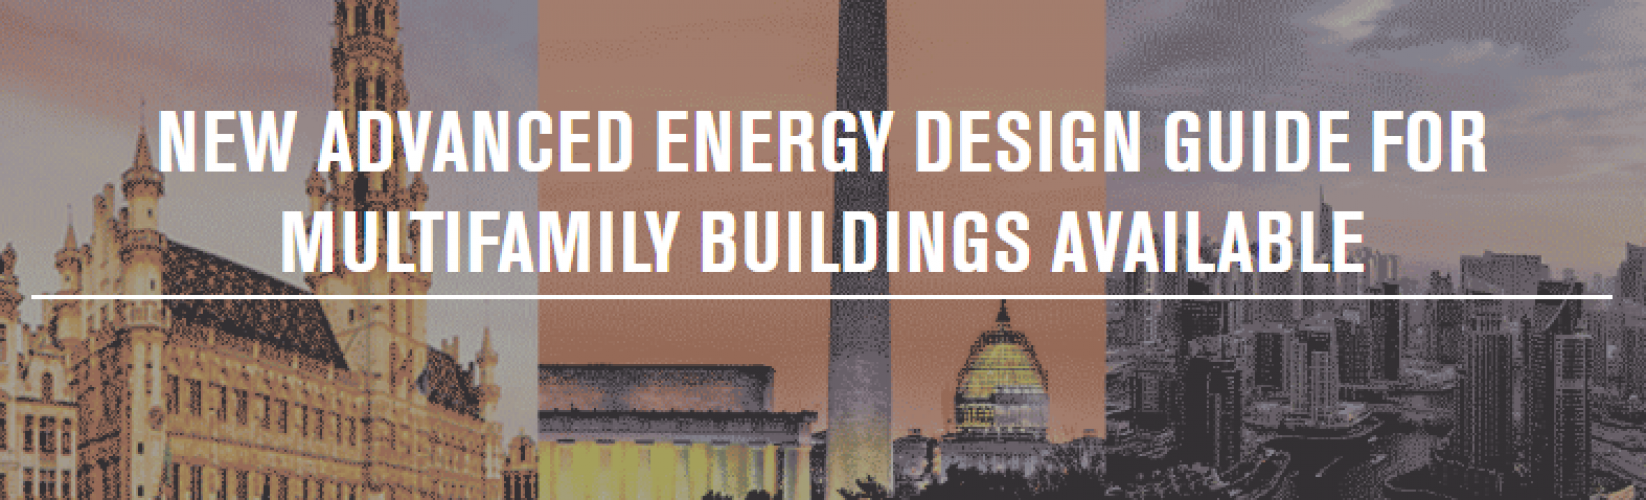 Disponible la Nueva guía de diseño energético avanzado para edificios multifamiliares